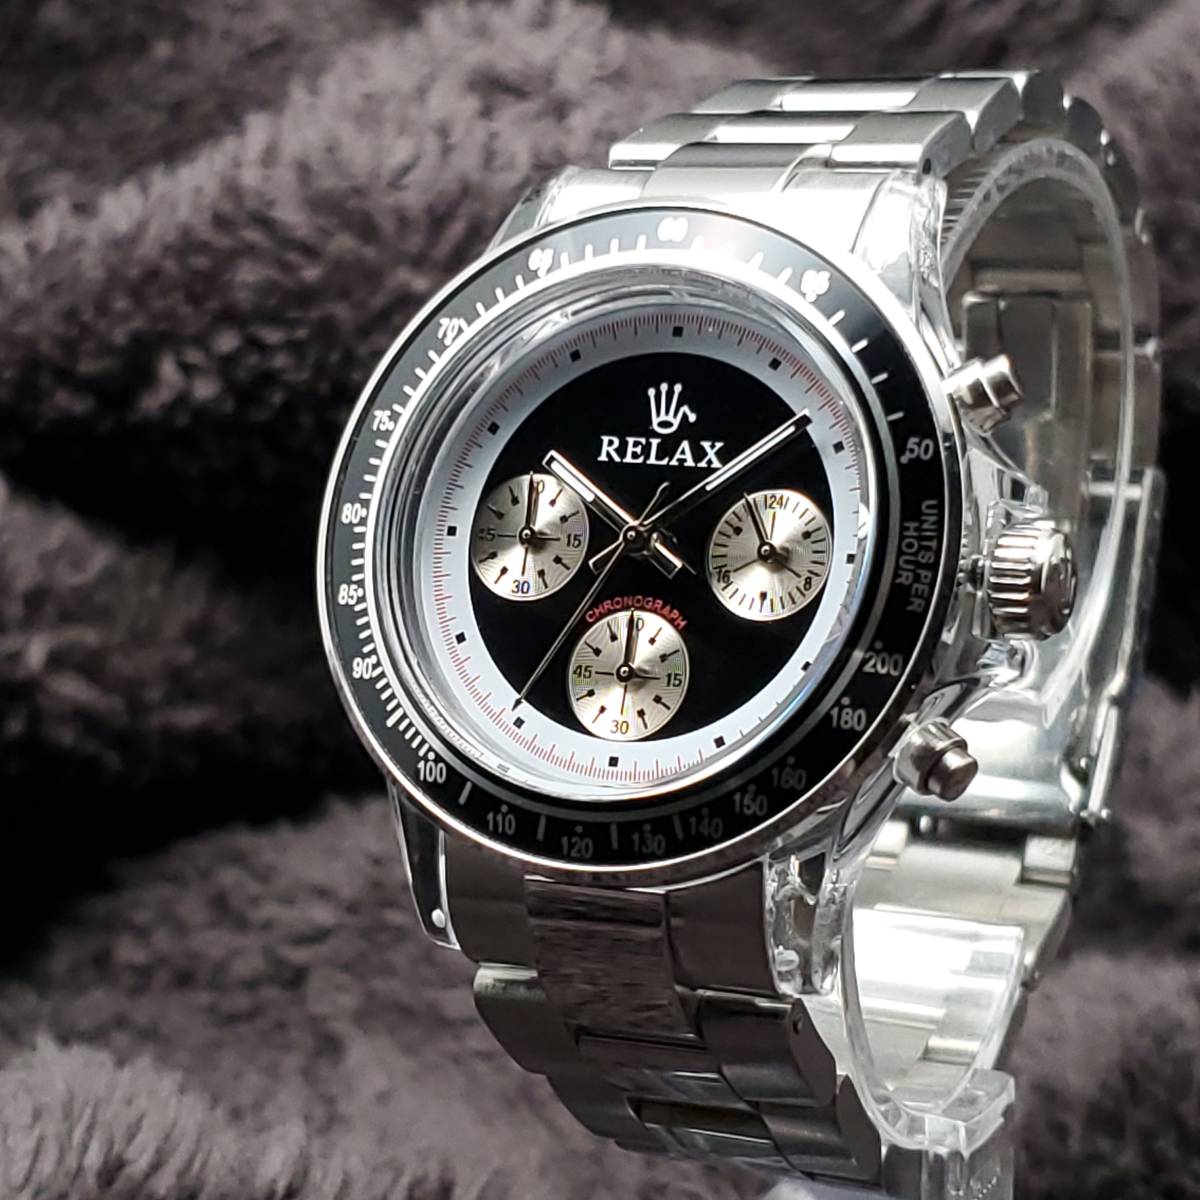 RELAX リラックス 王冠ロゴ ヴィンテージカスタム腕時計 世界で最も人気のポール・ニューマン腕時計 黒文字盤 世田谷ベース 所ジョージ 